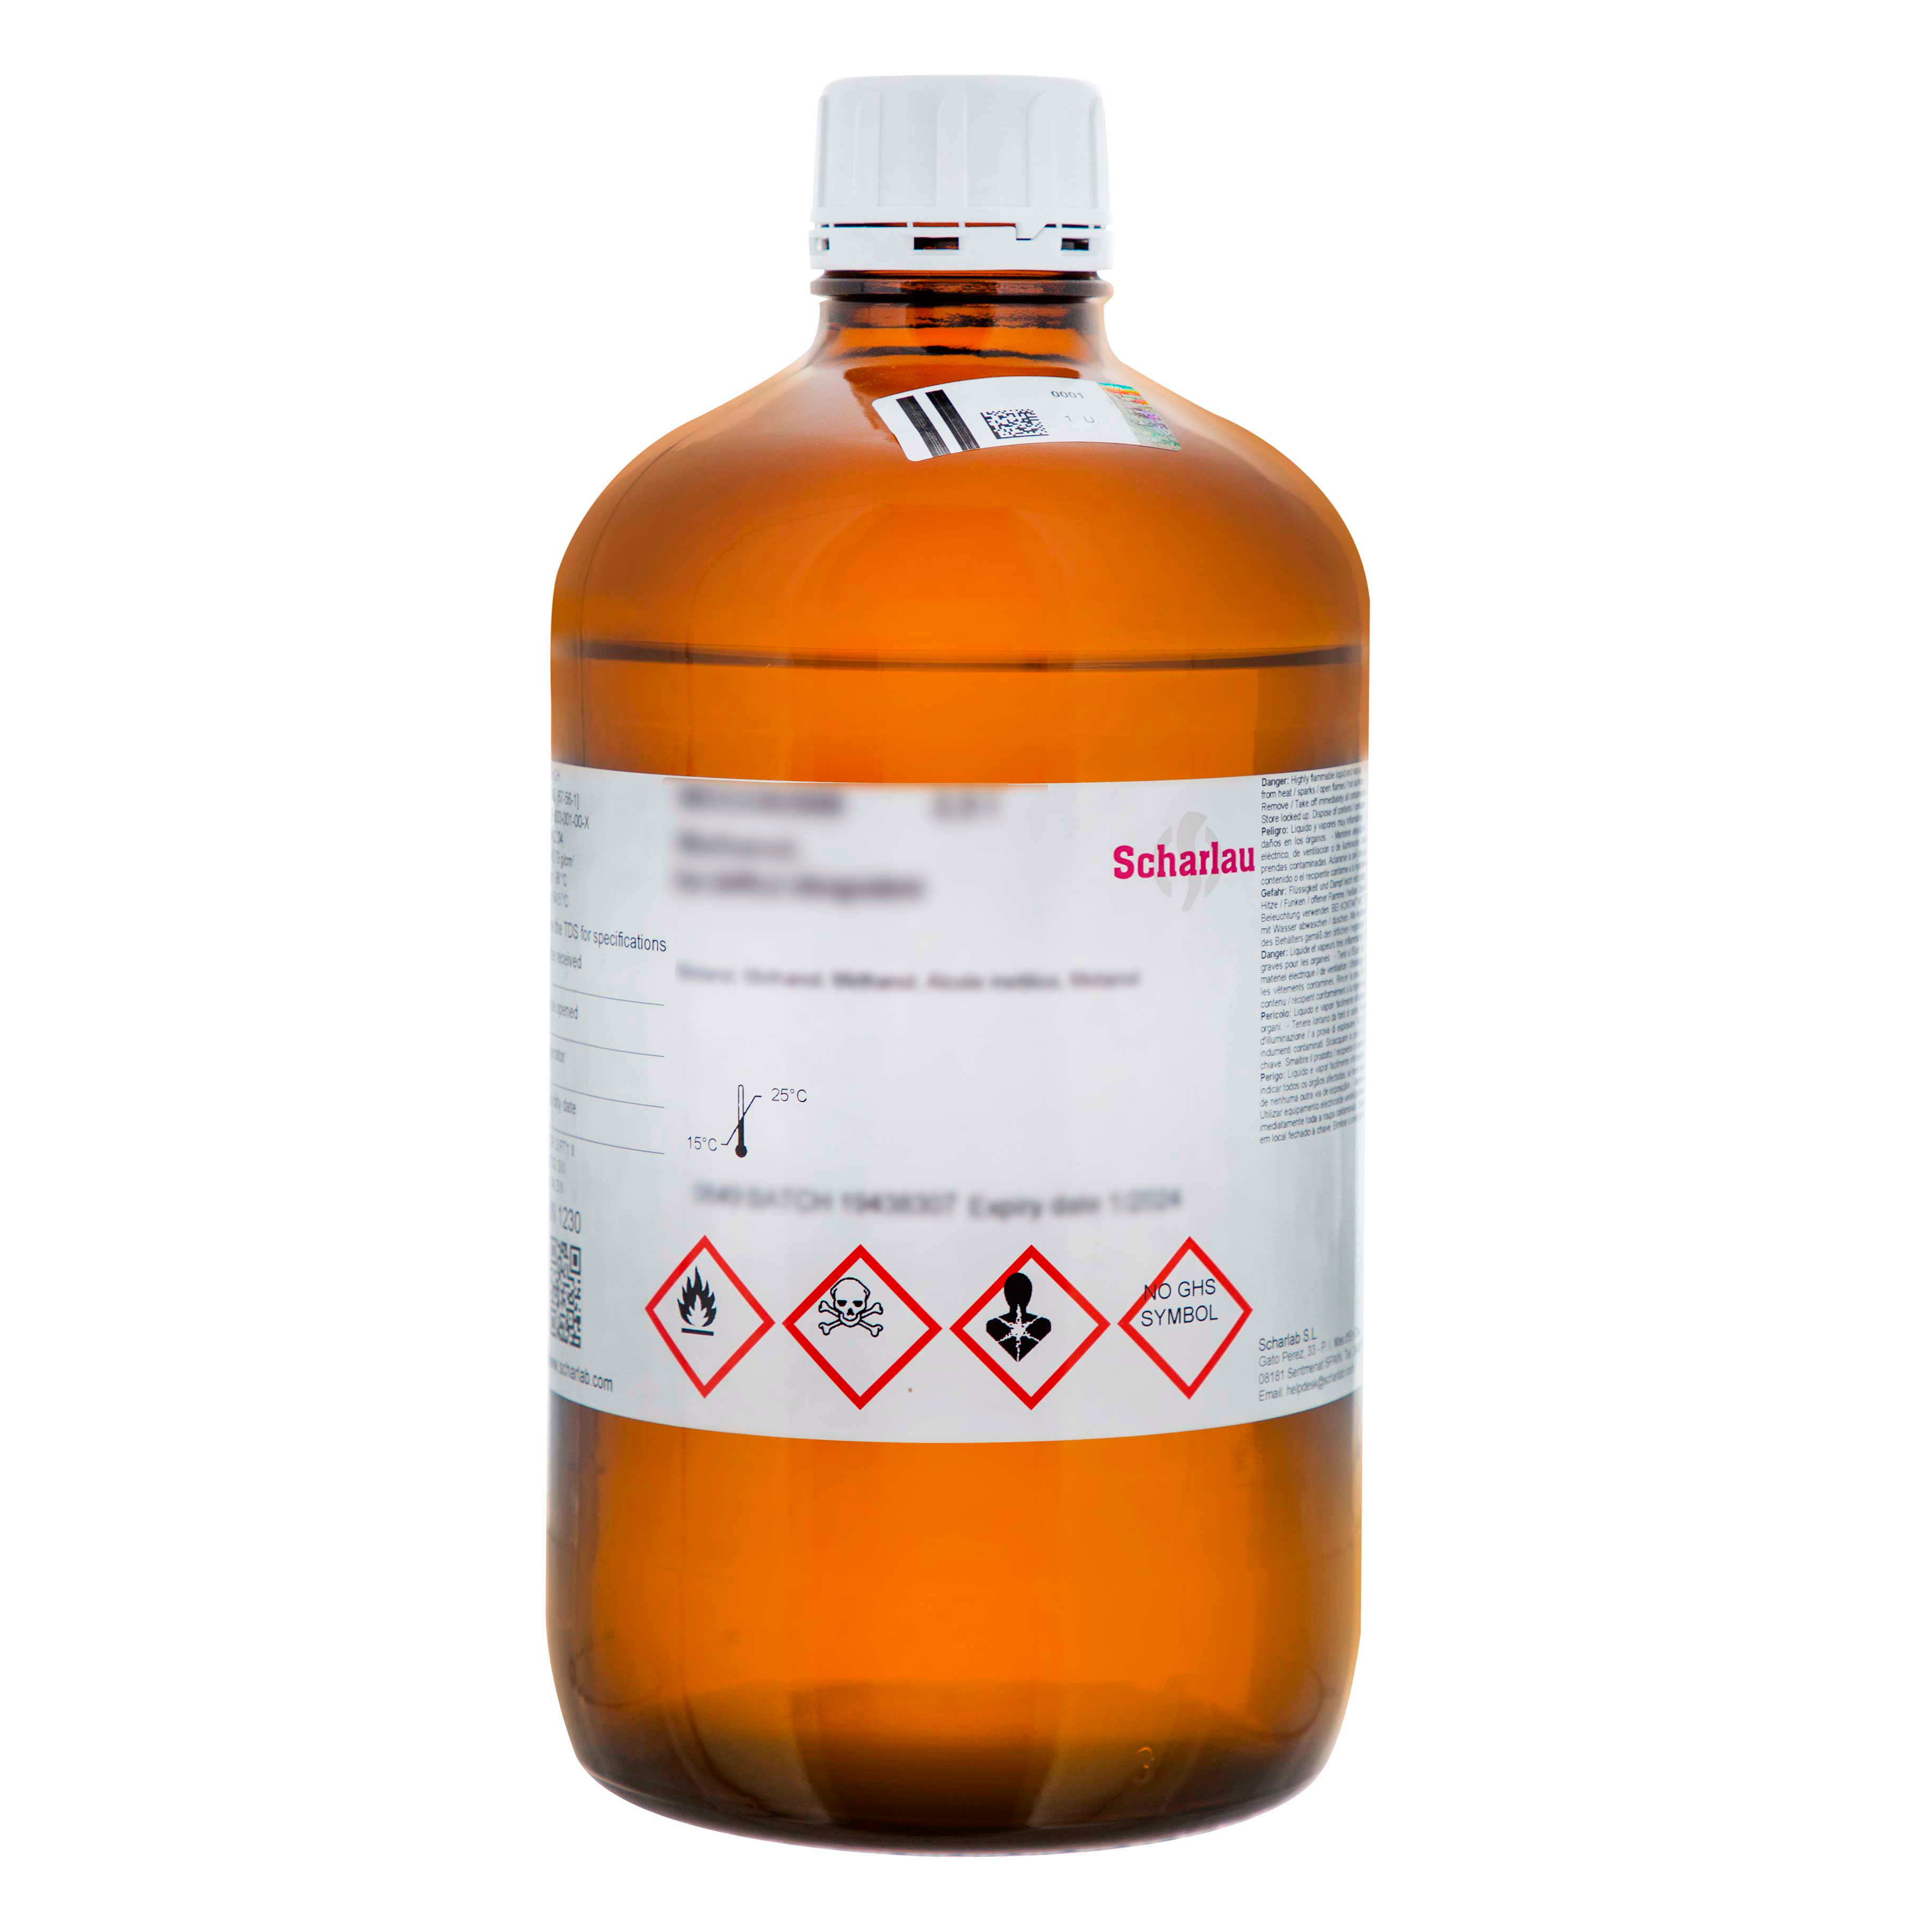 Tetrahidrofurano, Multisolvent® para GPC, ACS, estabilizado con 250 ppm de 2,6-Di-terc-butil-4-metilfenol (BHT), Oxolano, THF, Tetrametileno óxido